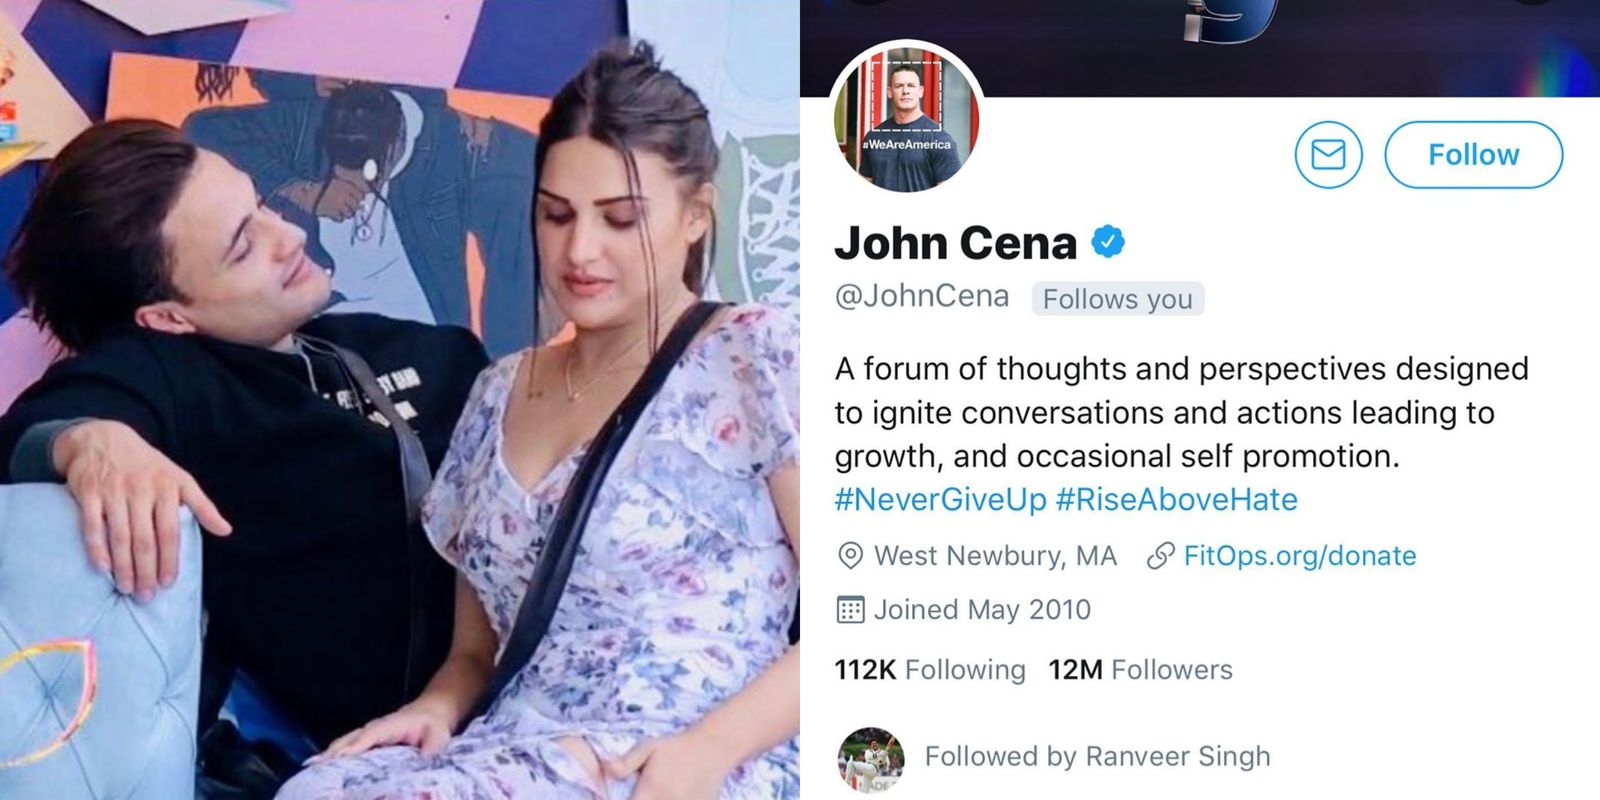 Bigg Boss 13: After Rooting For Asim Riaz, John Cena Follows Himanshi Khurrana On Twitter Along With Paris Hilton